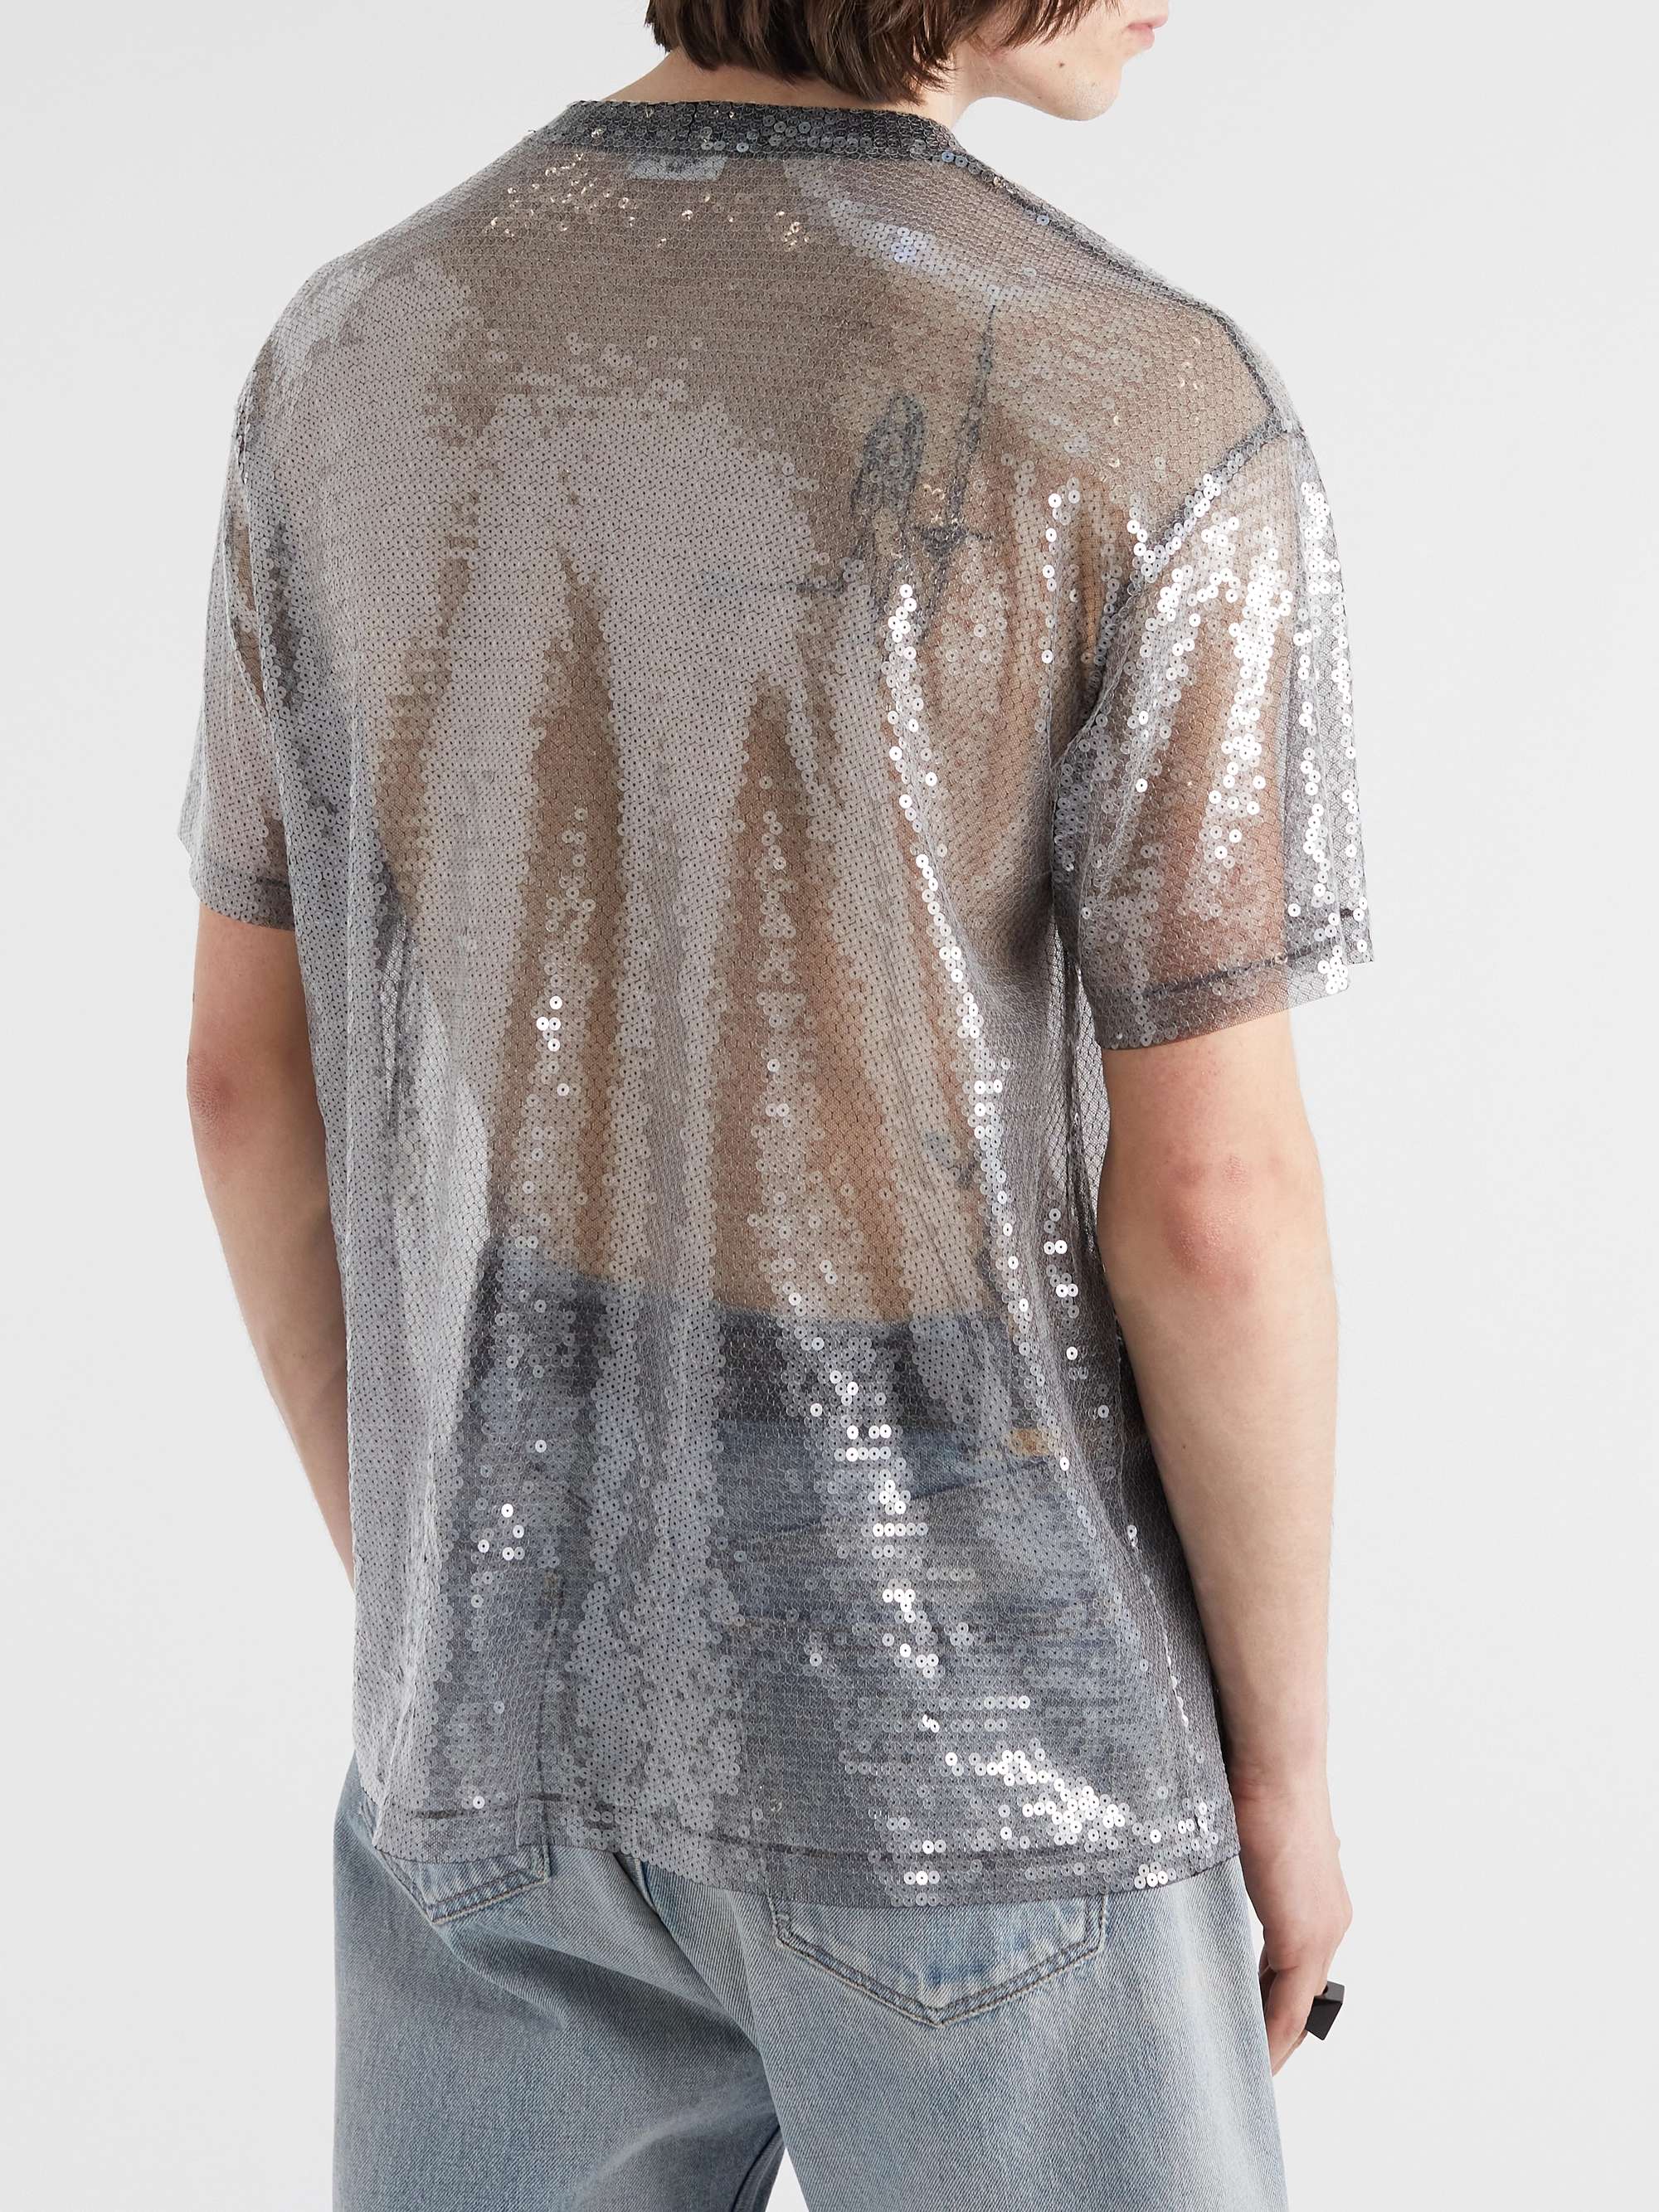 CELINE HOMME Sequin-Embellished Tulle T-Shirt